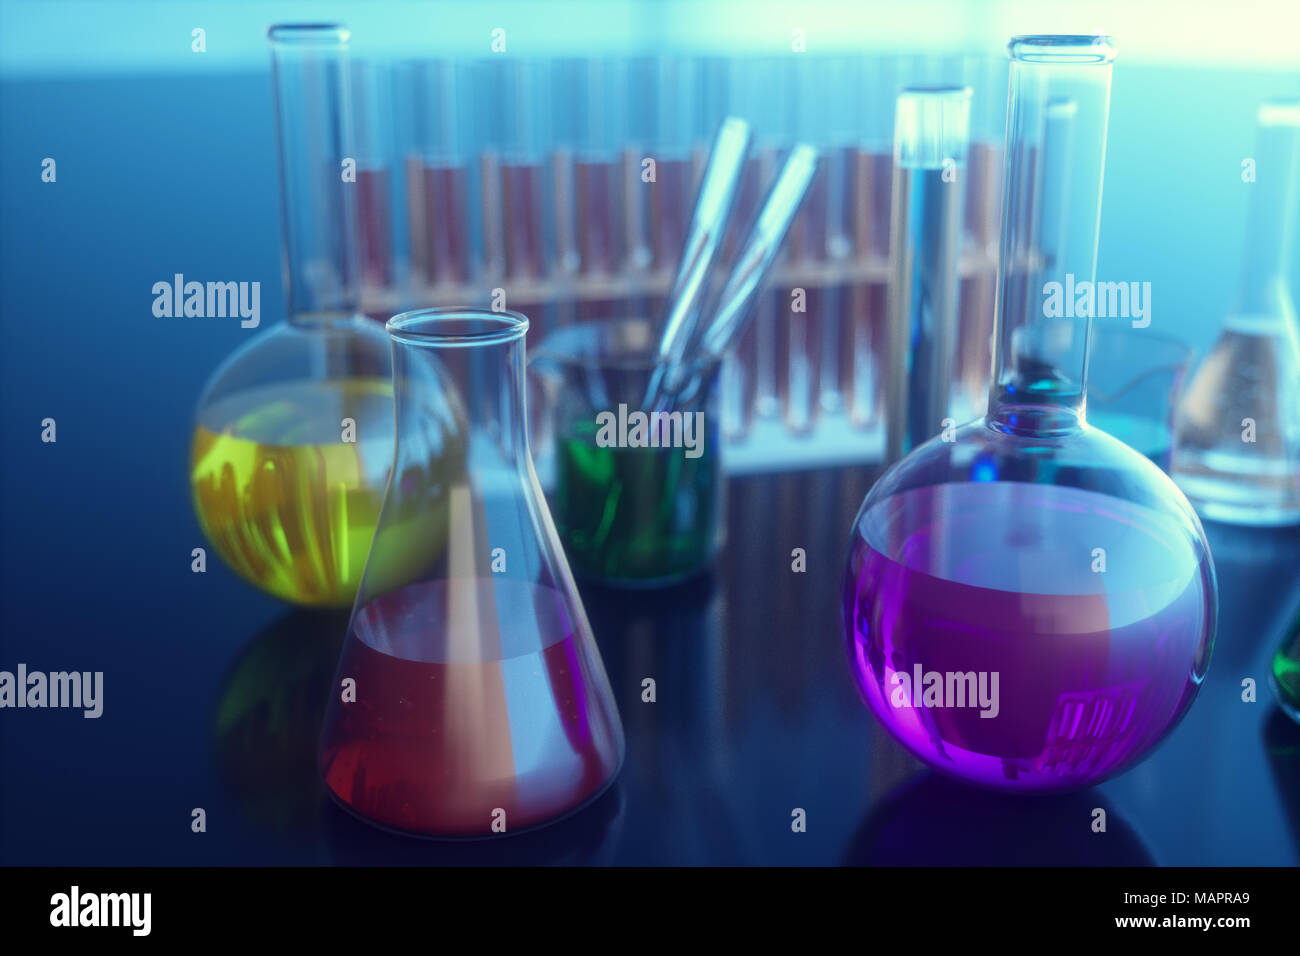 3D-Darstellung einer chemischen Reaktion, das Konzept einer wissenschaftlichen Labor auf einem blauen Hintergrund. Kolben mit farbigen Flüssigkeiten mit unterschiedlichen Zusammensetzungen gefüllt Stockfoto